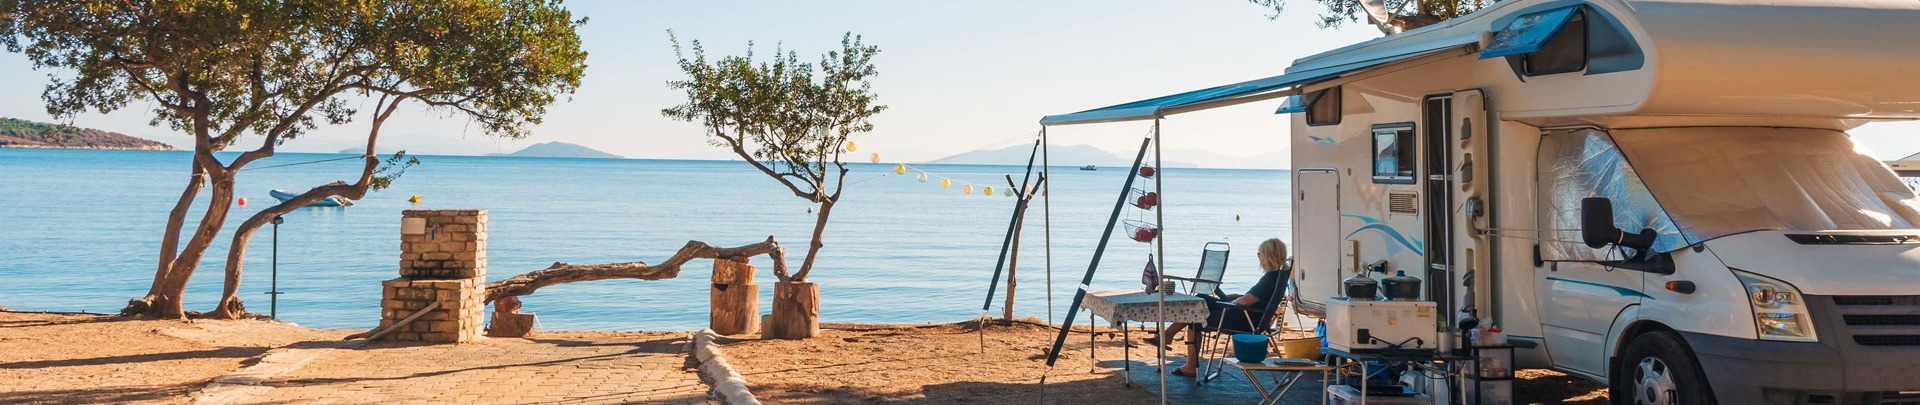 Familie die met een camper reist, eet ontbijt op een strand.